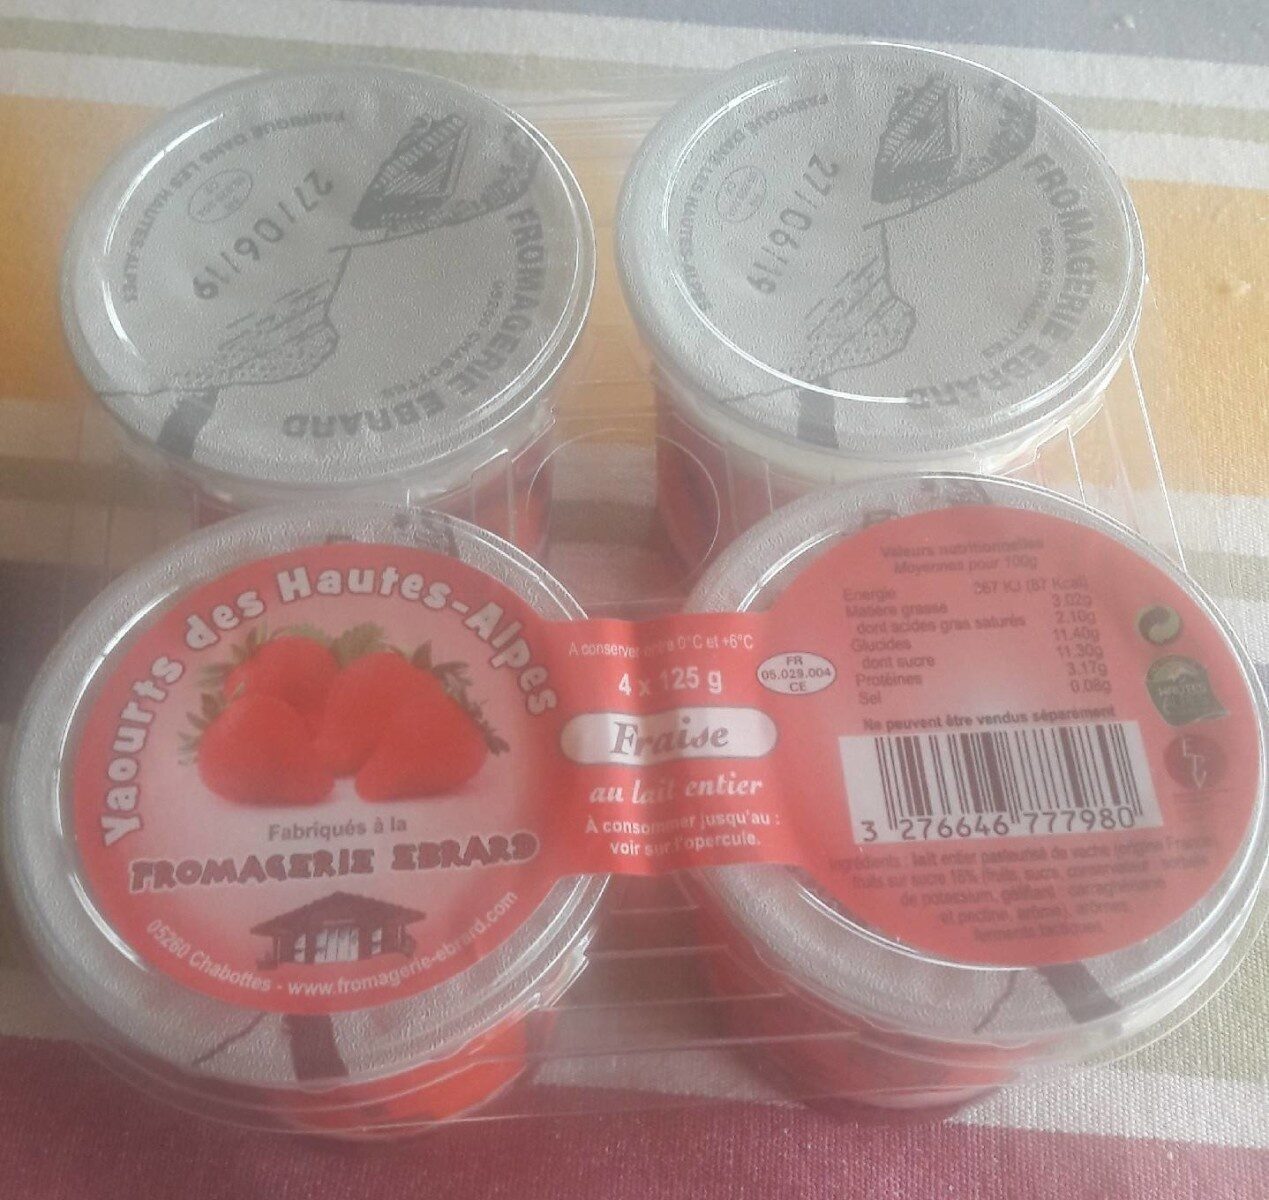 yaourt des hautes-alpes - Product - fr